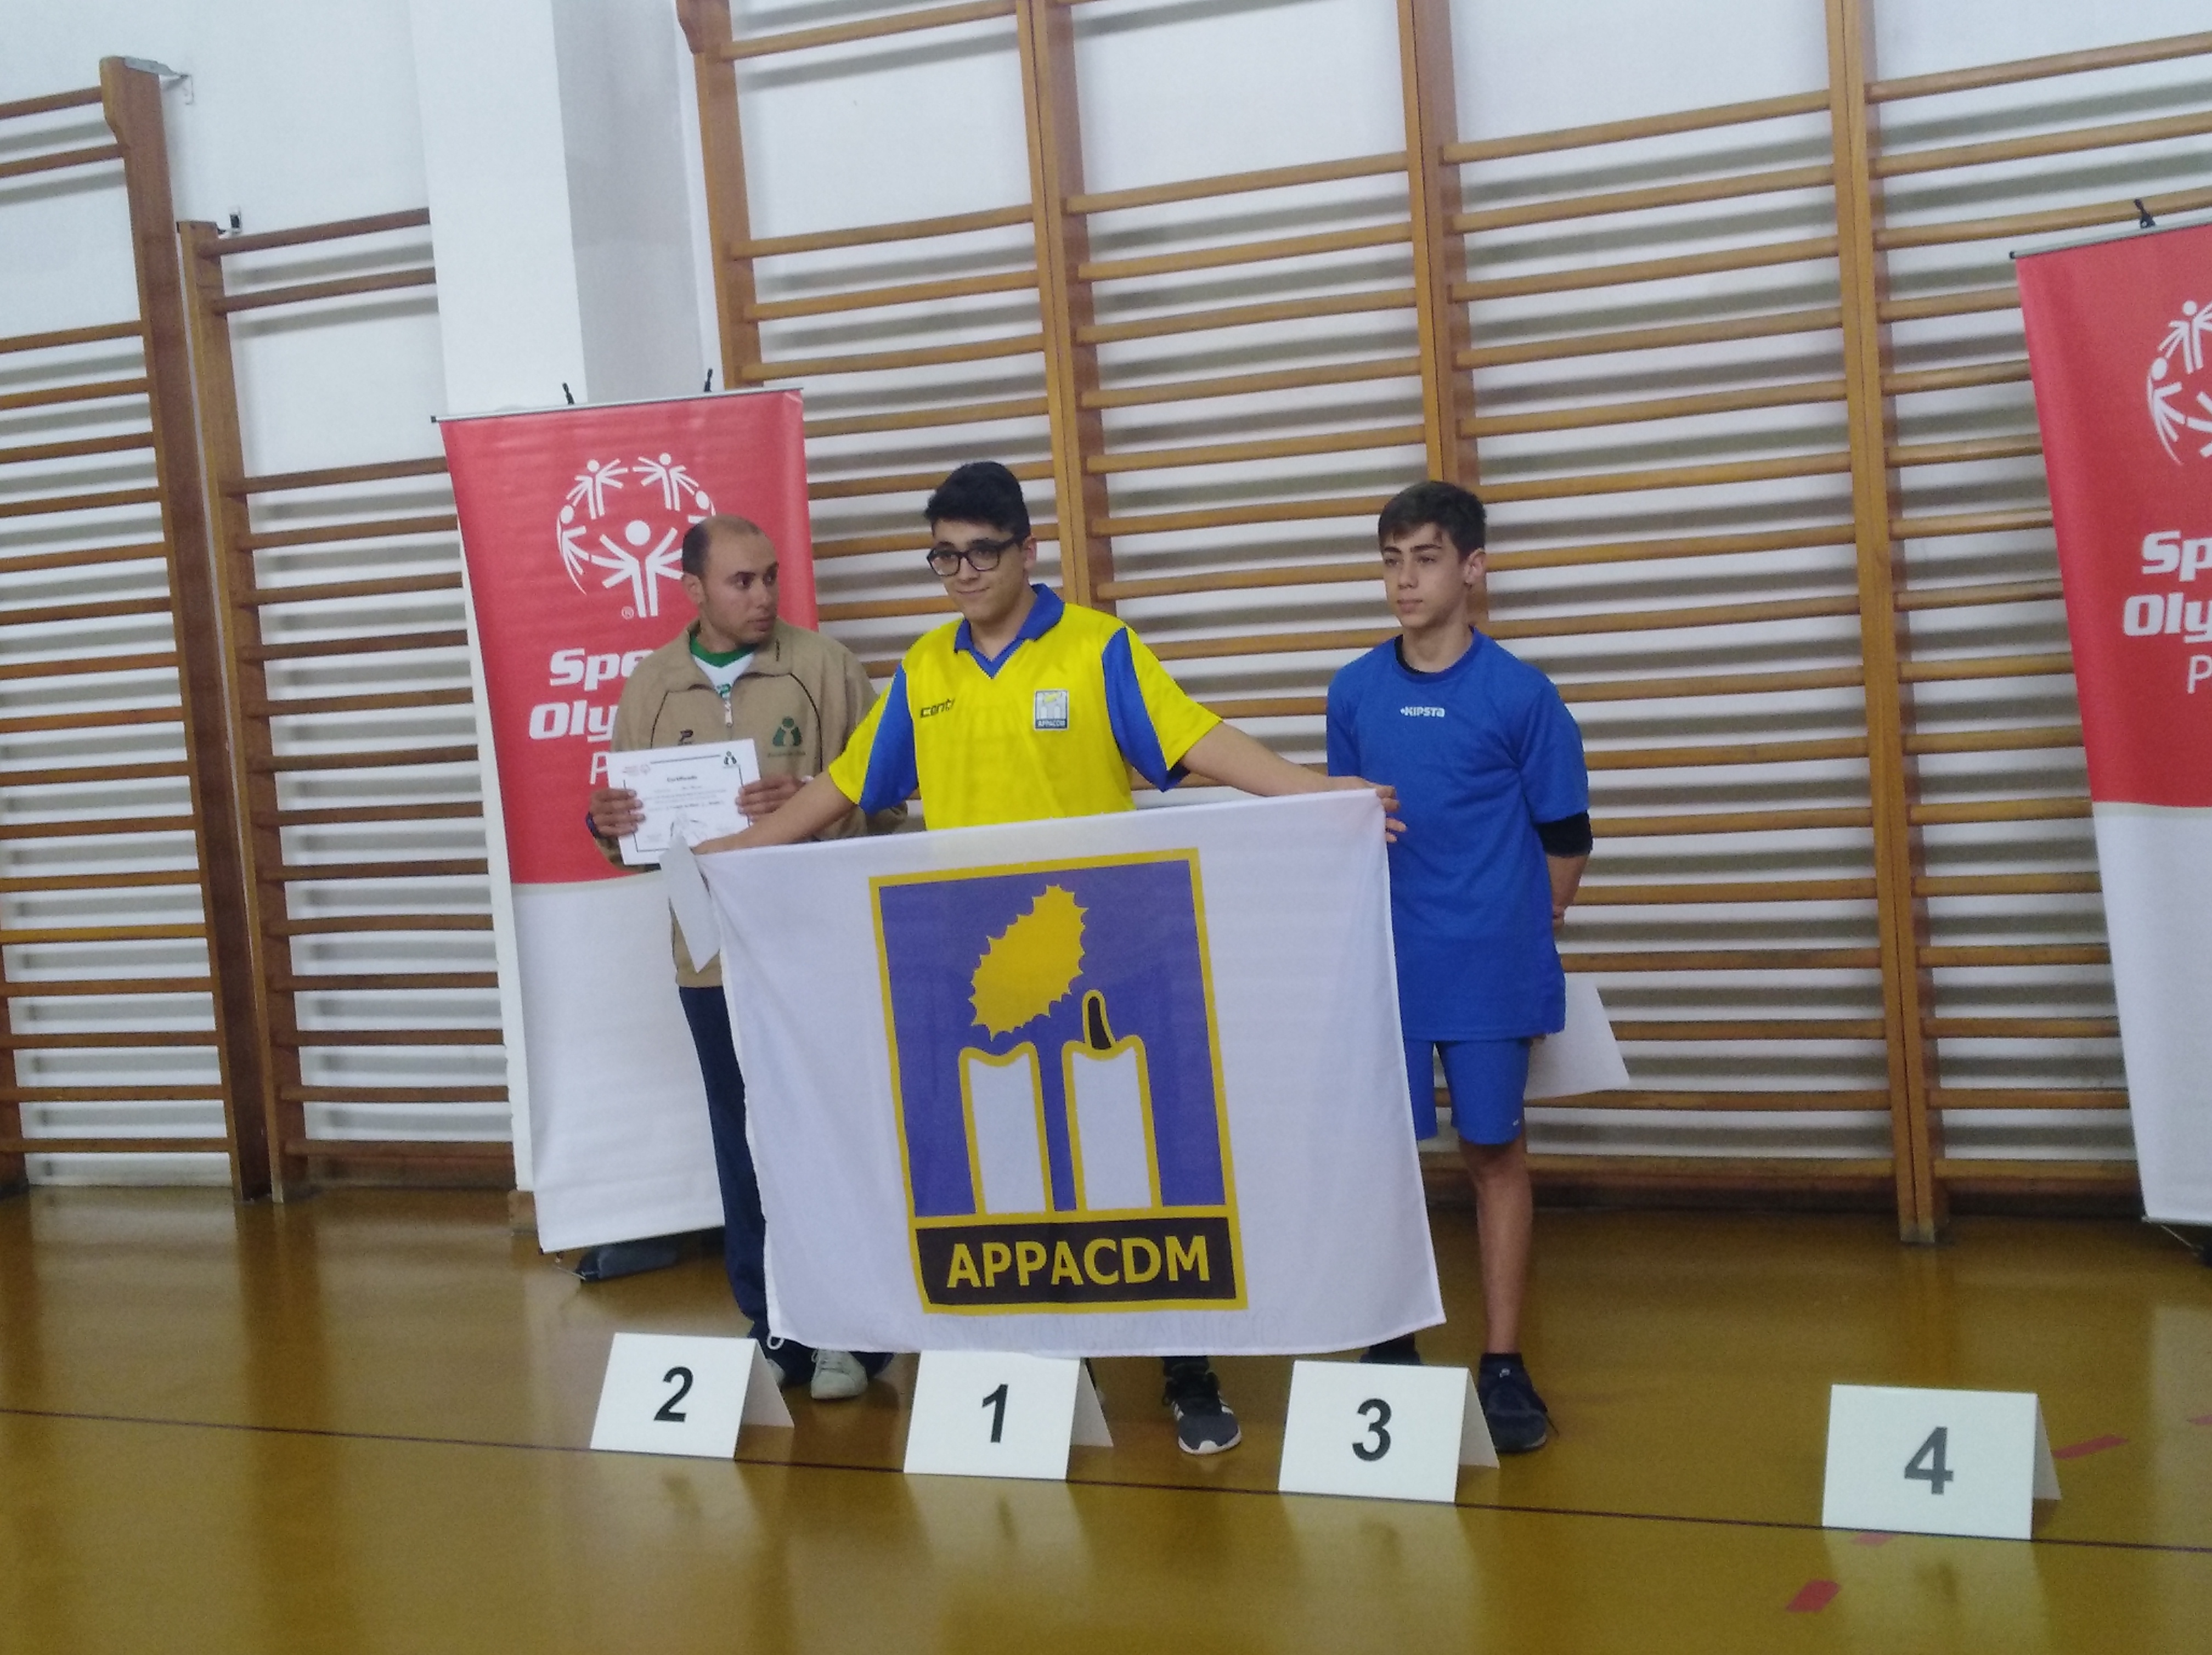 Castelo Branco : APPACDM alcançou bons resultados no Ténis de Mesa dos Special Olympics